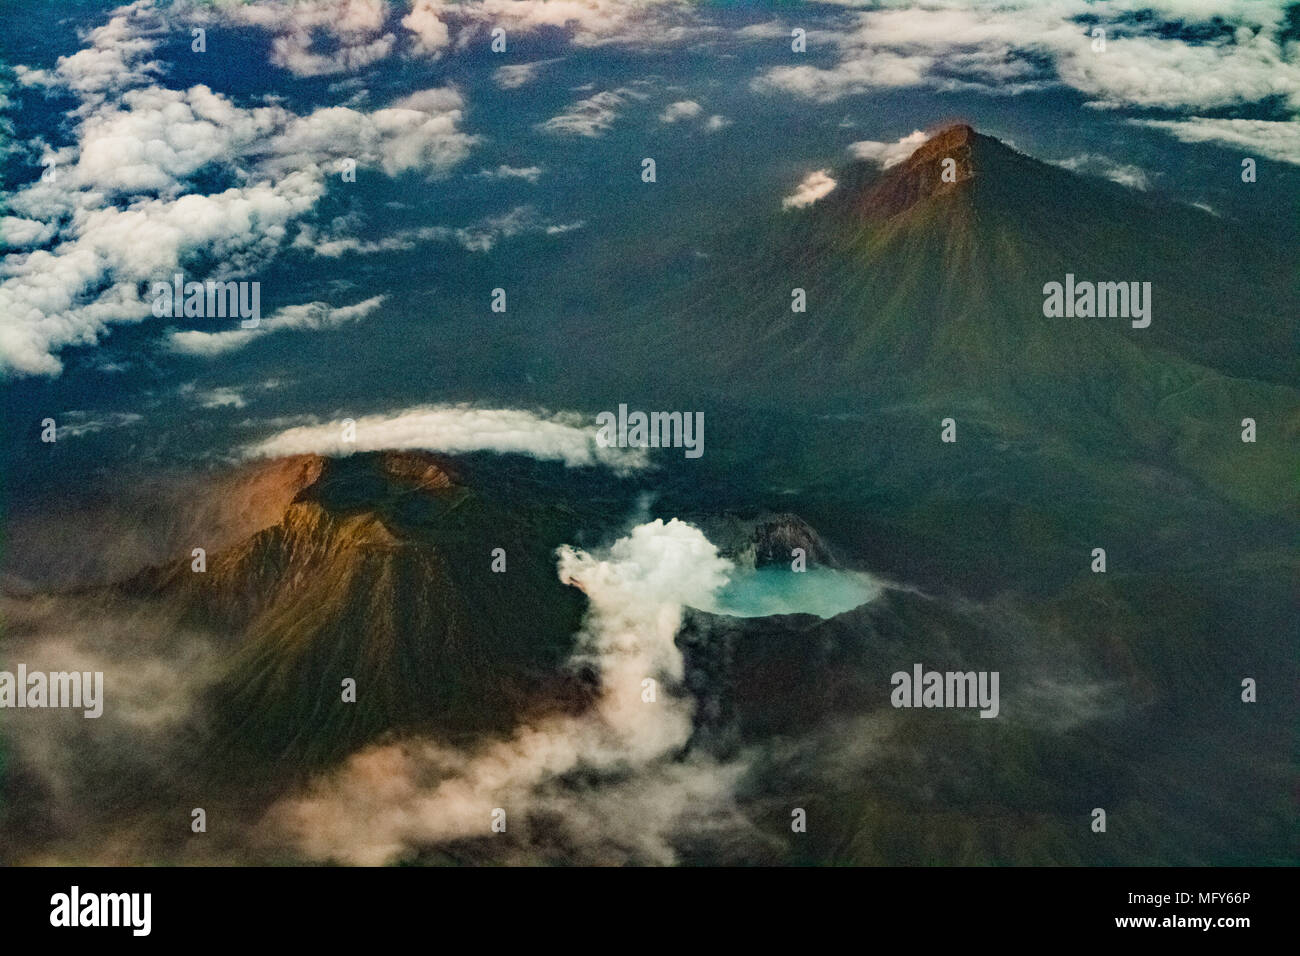 Die Ijen Krater komplex ist eine Gruppe von Composite Vulkane in der banyuwangi Regentschaft von Ostjava, Indonesien. Stockfoto